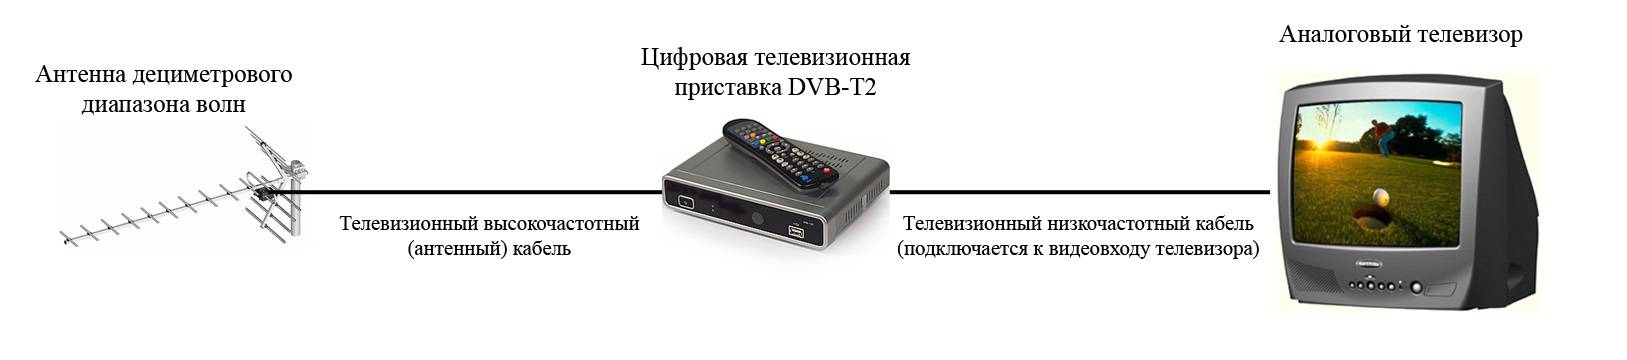 Как подключить тв к цифровой приставке. ТВ-приставка для цифрового телевидения DVB-t2 схема подключения. DVB-t2 приставка схема подключения. Подключить 2 телевизора к цифровой приставке TVB-C. Как подключить старый телевизор к приставке т2.